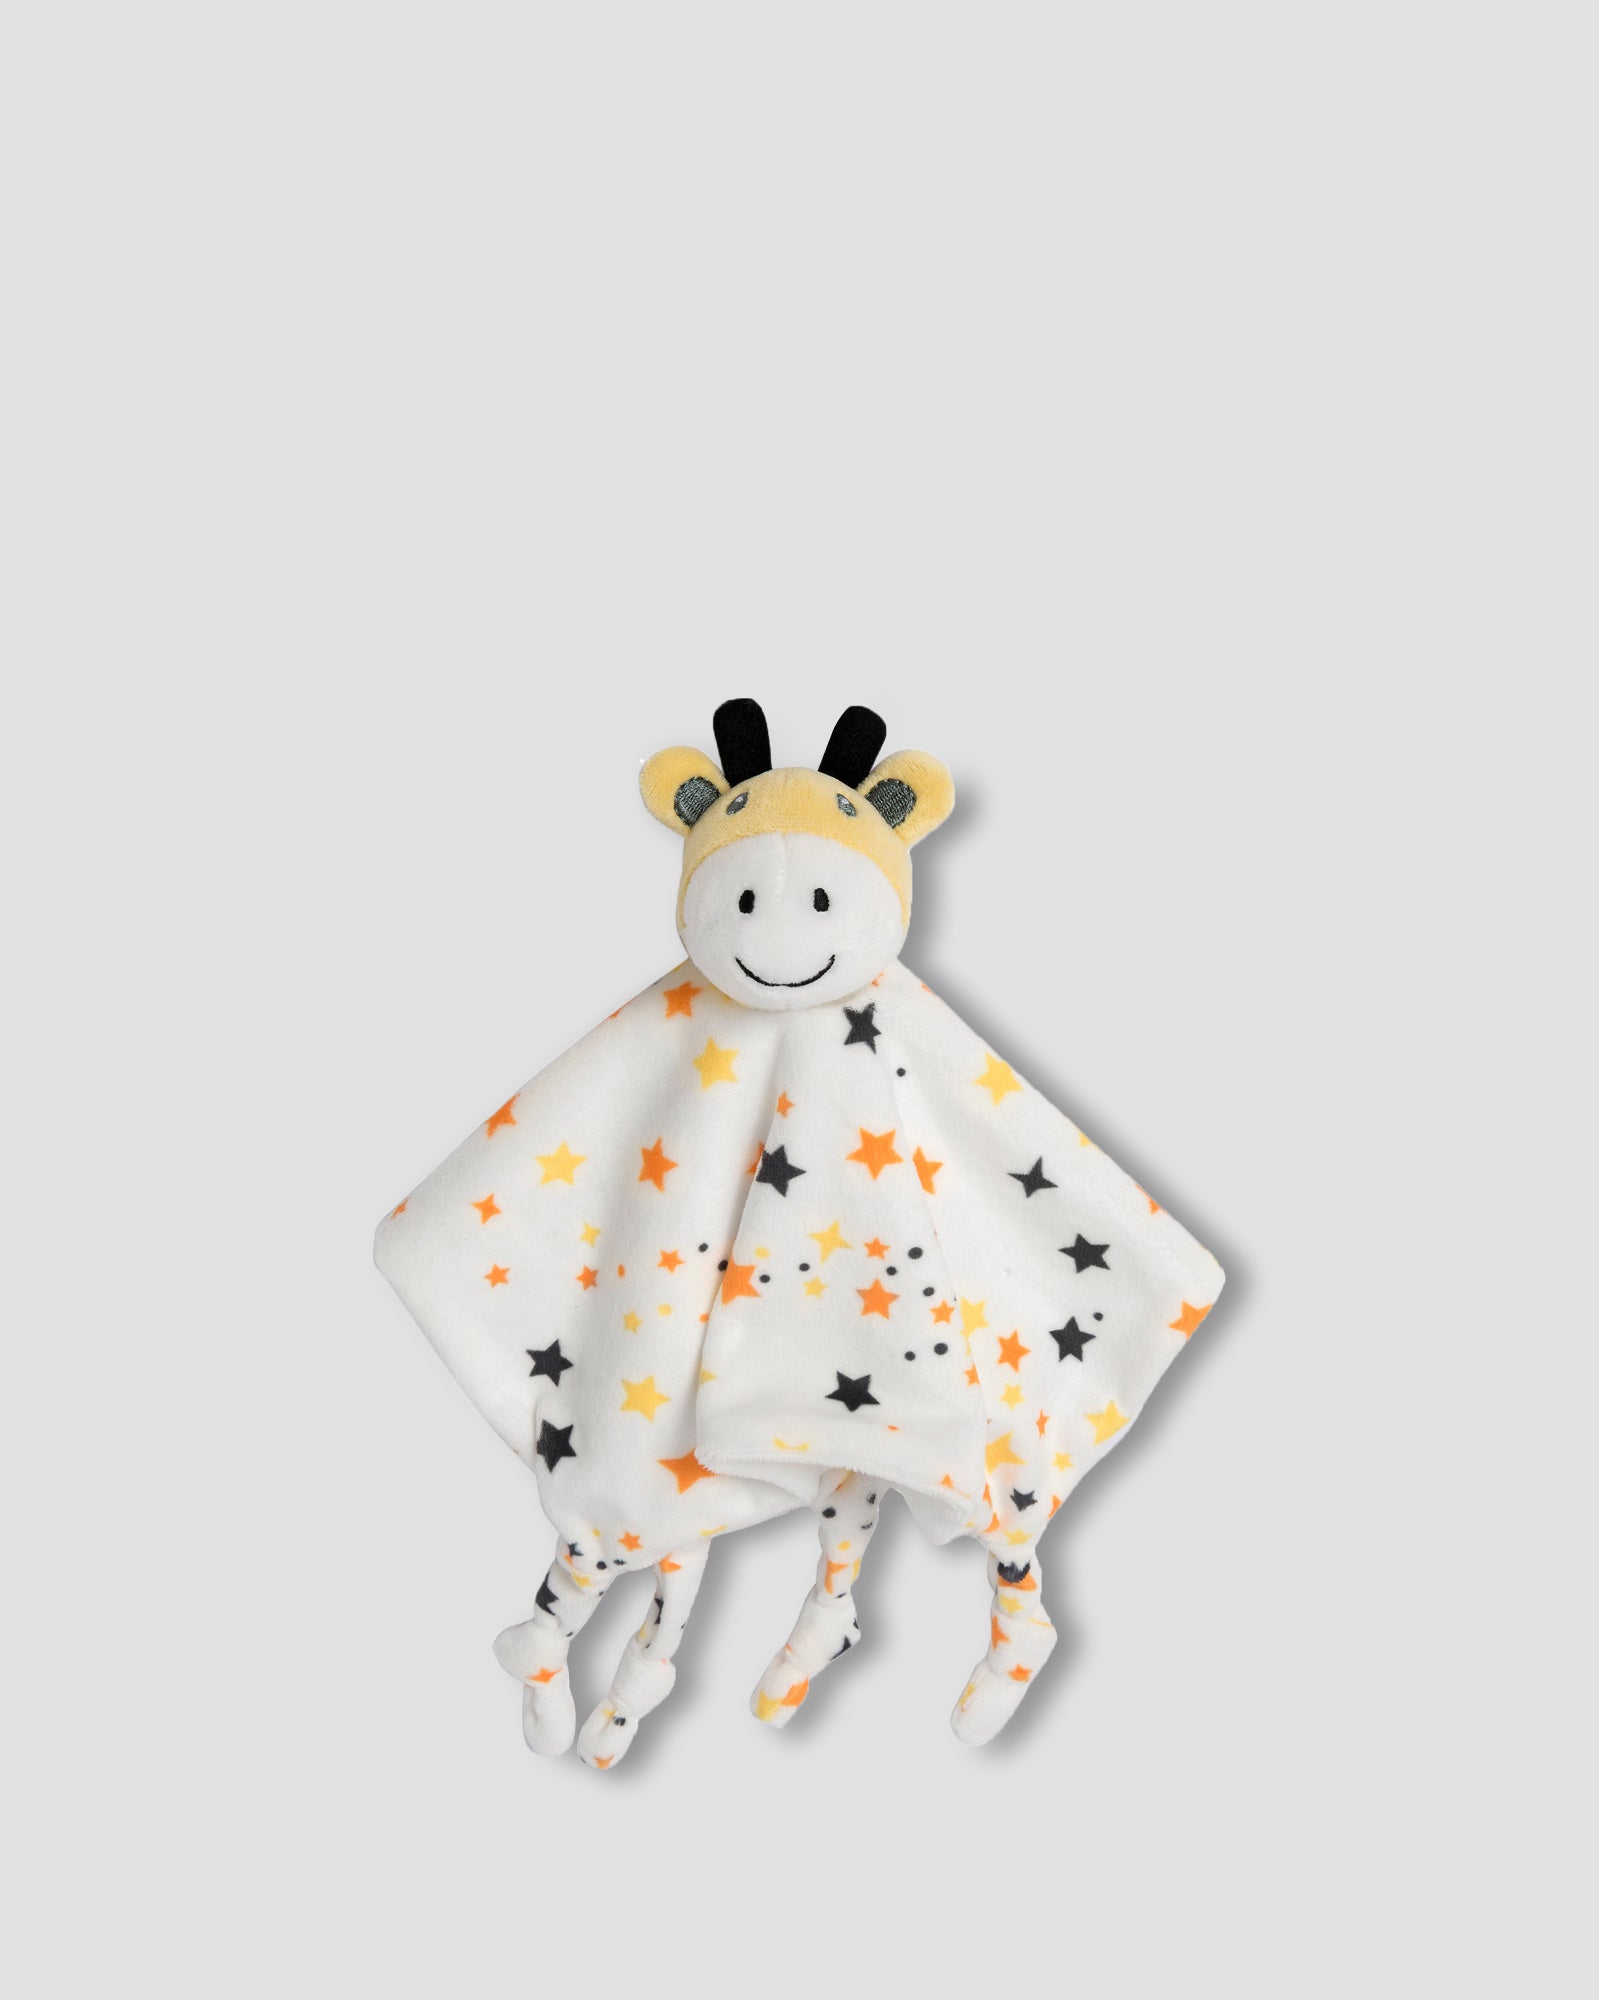 Little Linen Lovie/Comforter Giraffe Star